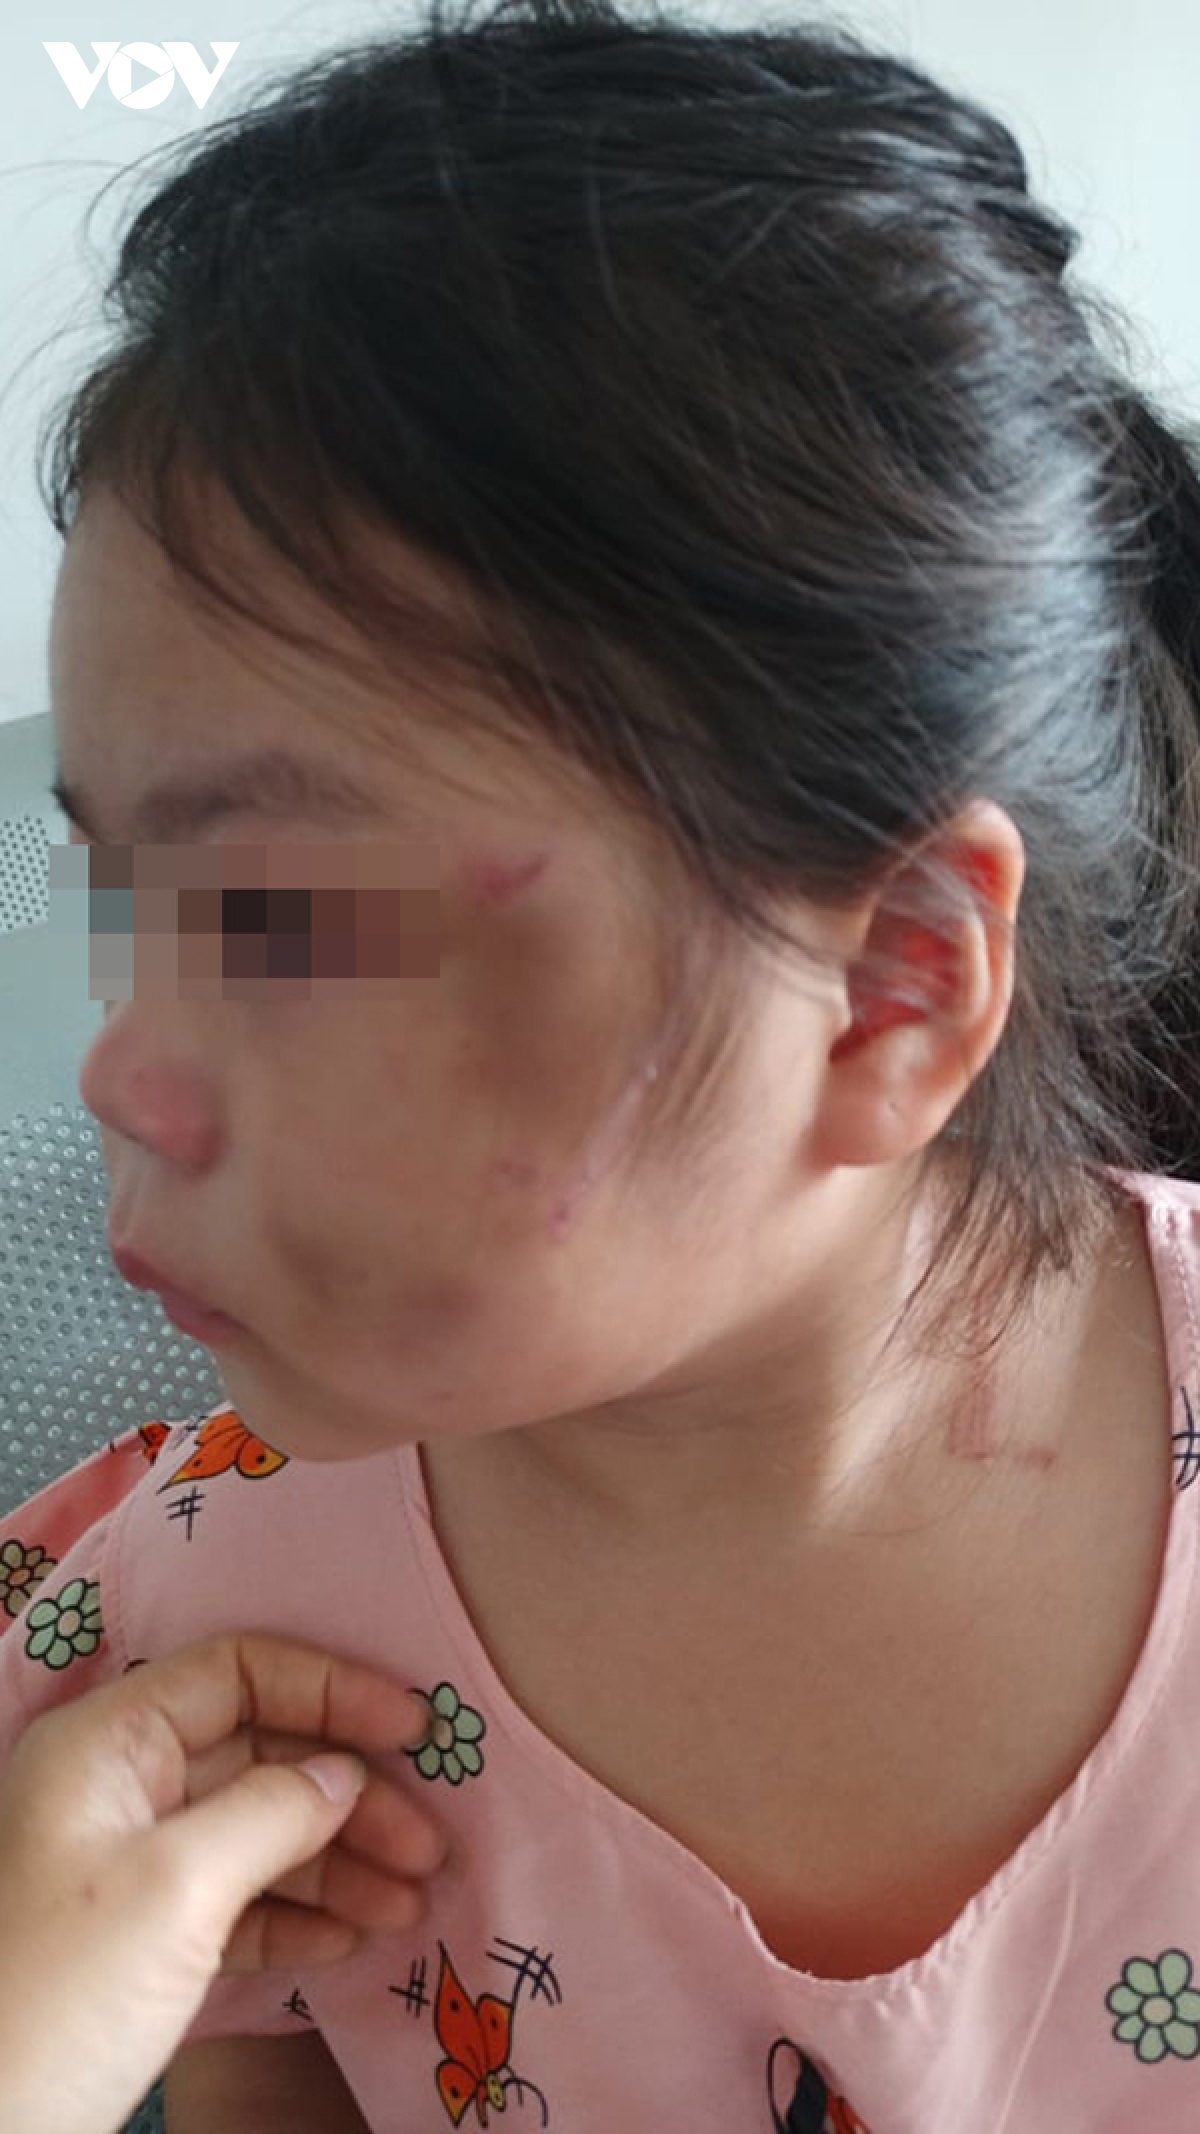 Bình Dương: Bé gái 6 tuổi bầm tím mặt vì cha ruột “lỡ tay' và lý do không ai ngờ đến - Ảnh 1